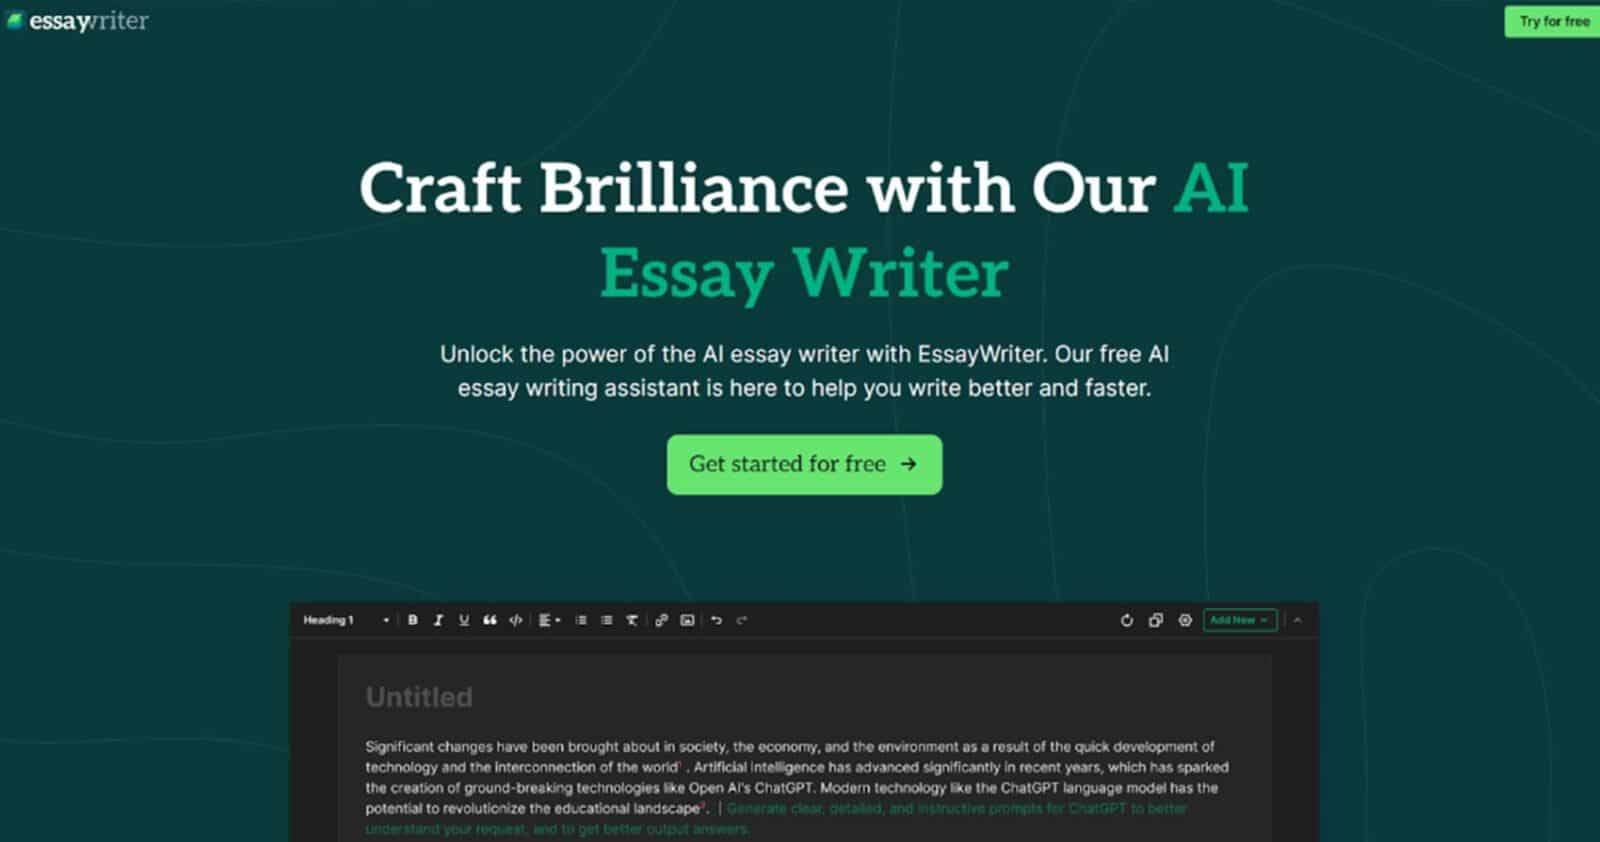 Essaywriter interface in green background